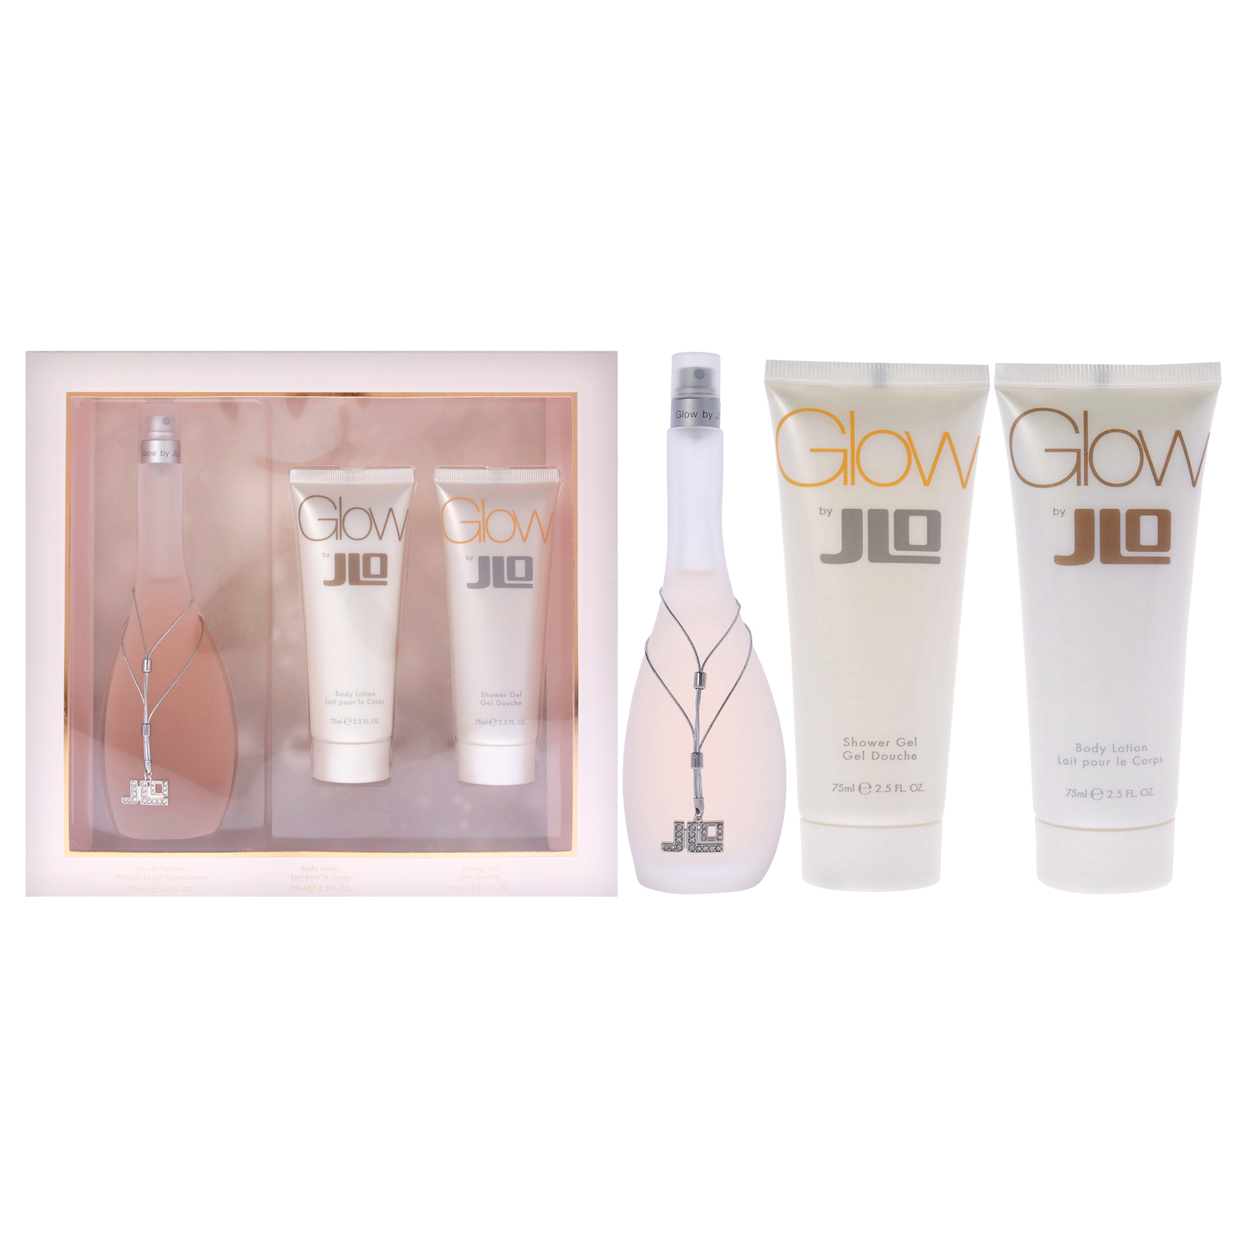 Jennifer Lopez Glow 3.4oz EDT Spray, 2.5oz Body Lotion, 2.5oz Shower Gel 3 Pc Gift Set